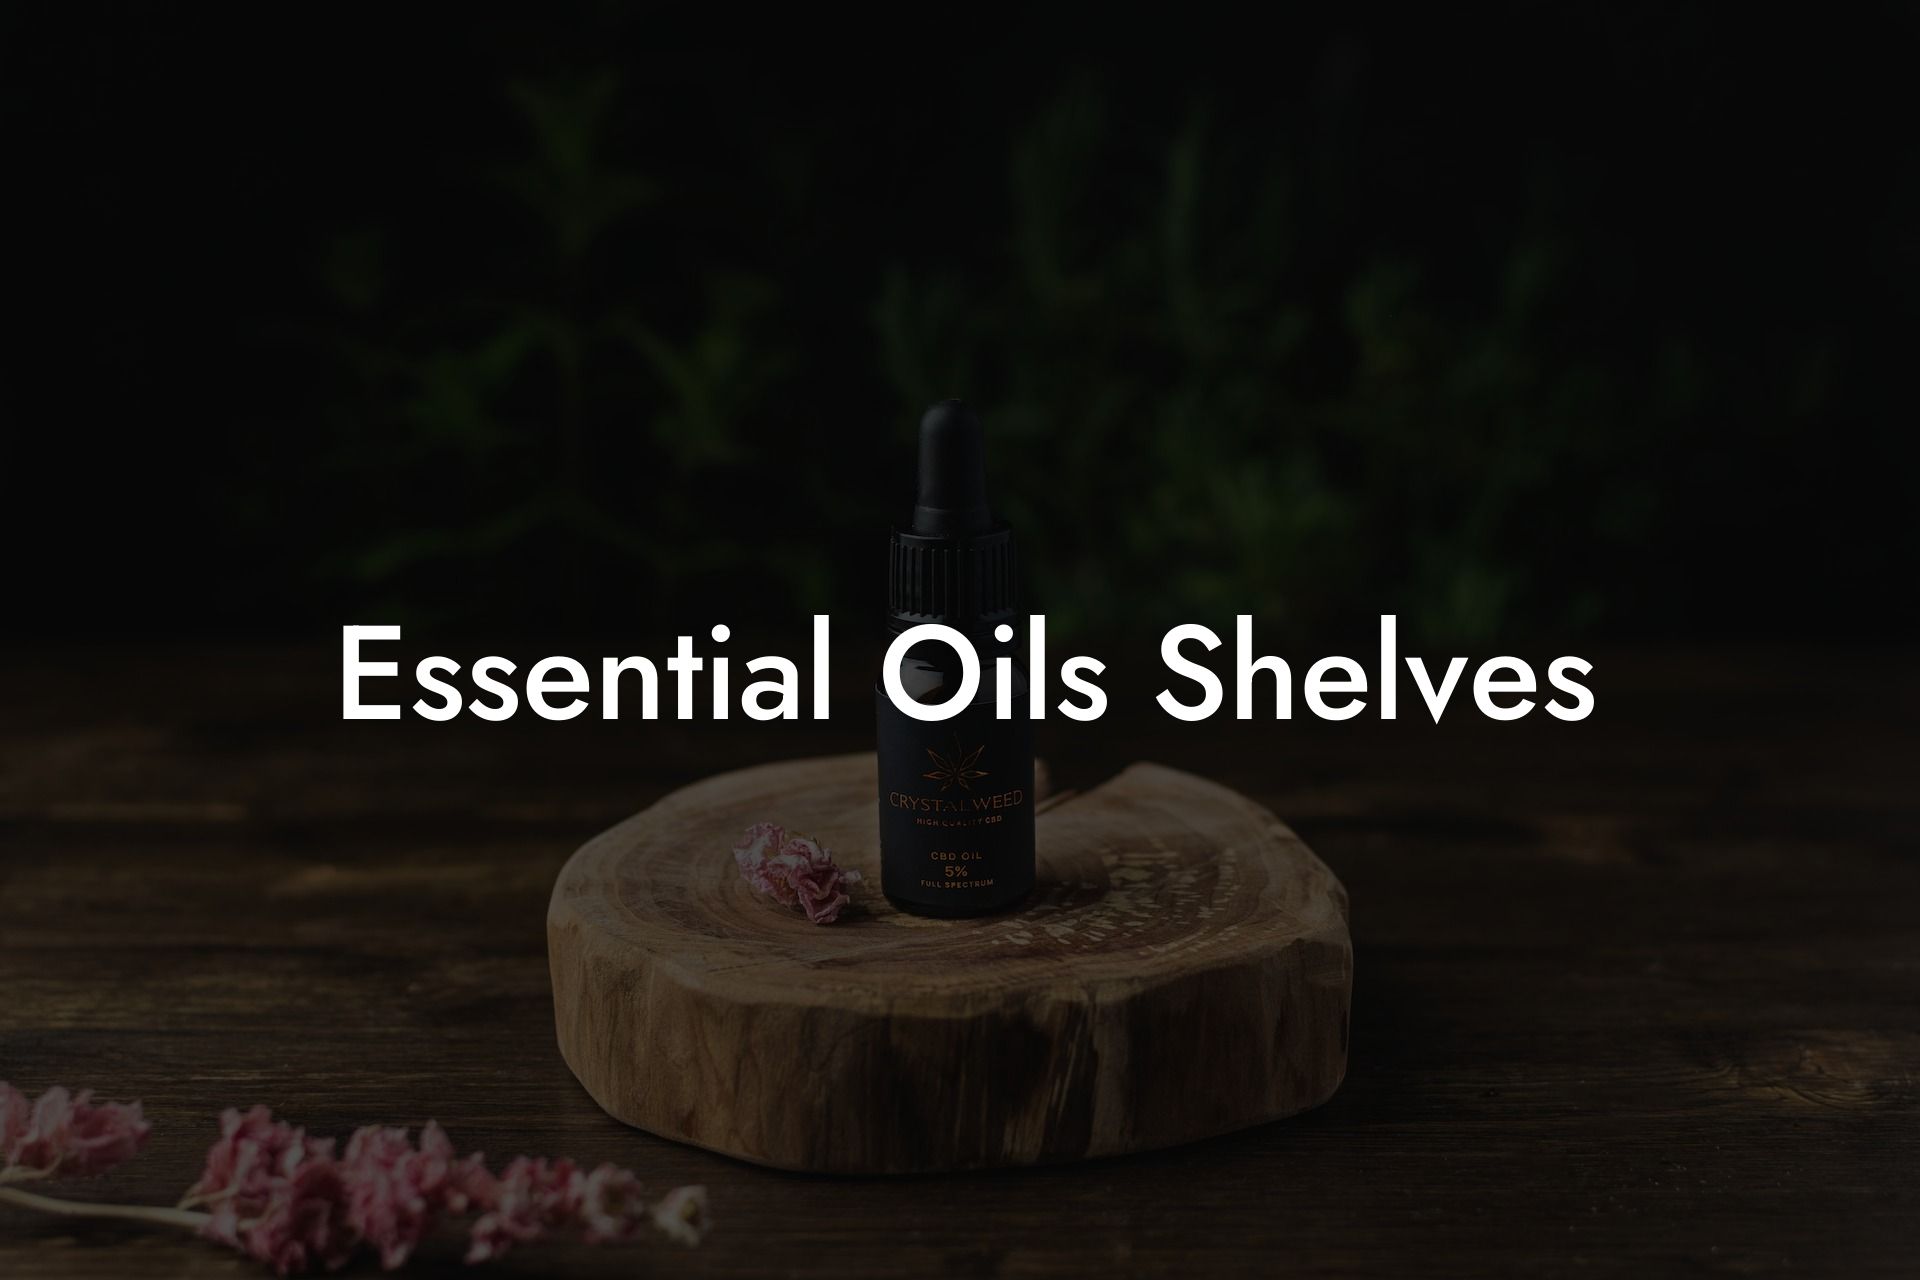 Essential Oils Shelves